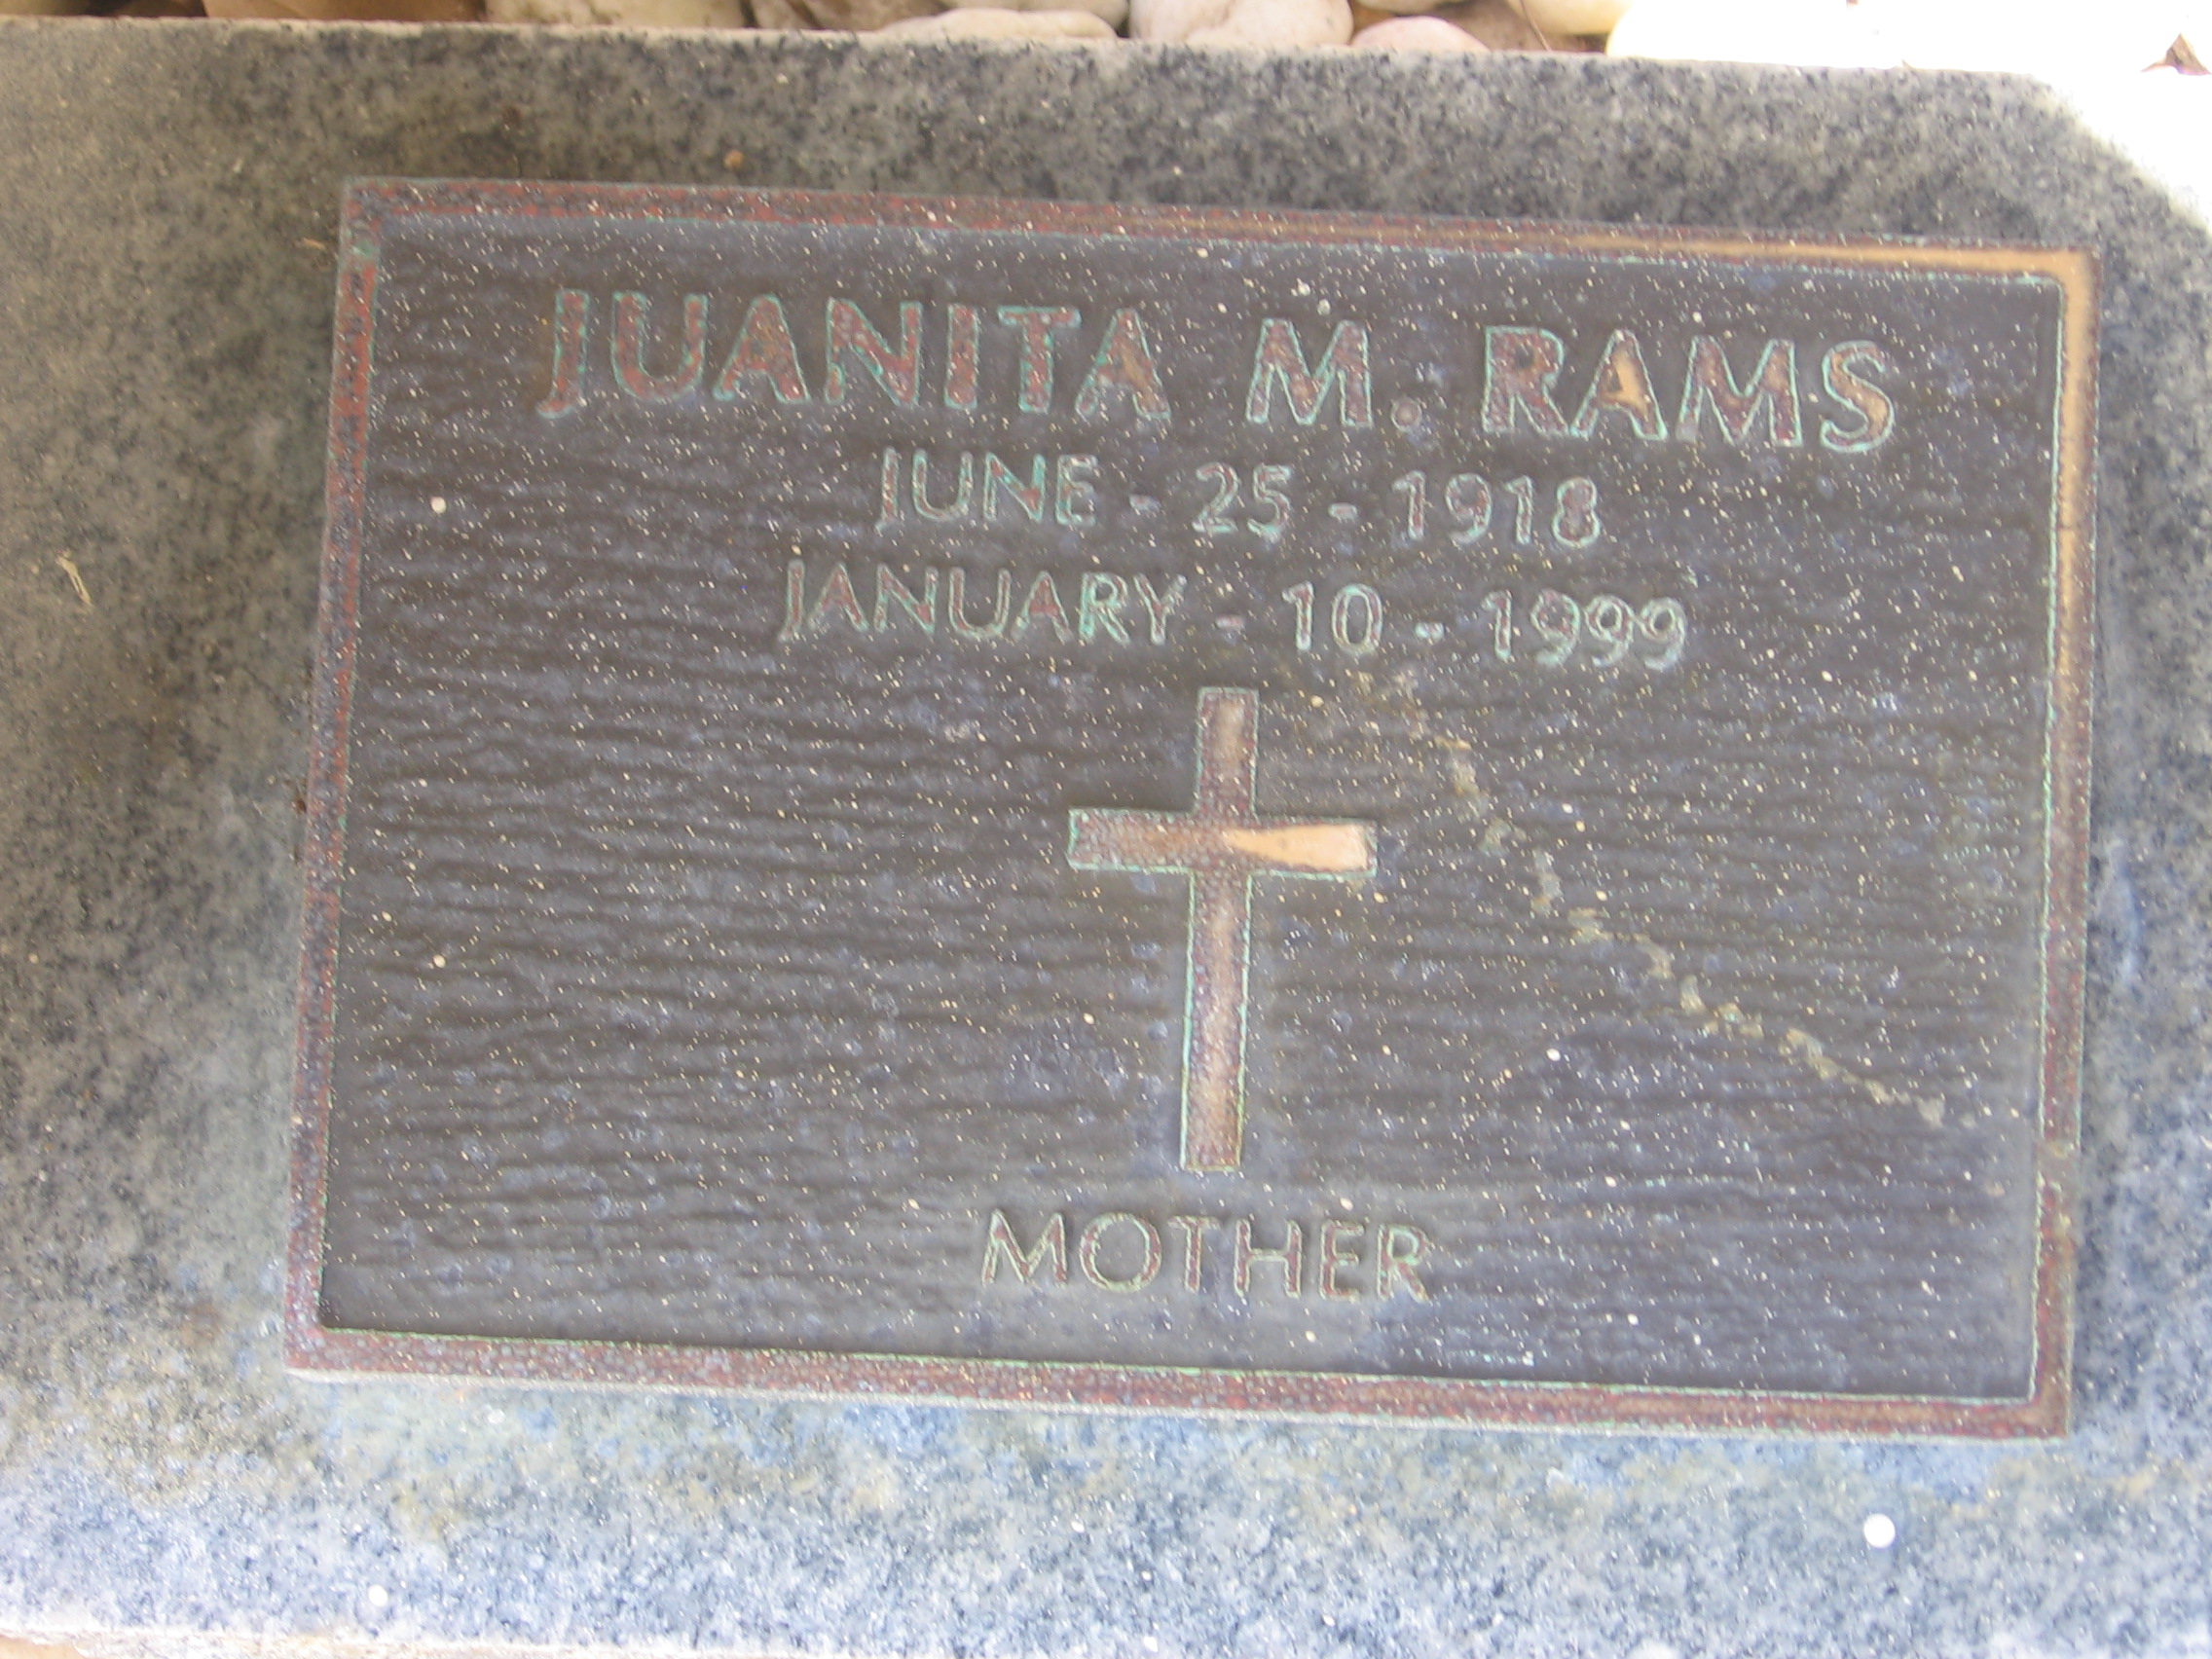 Juanita M Rams